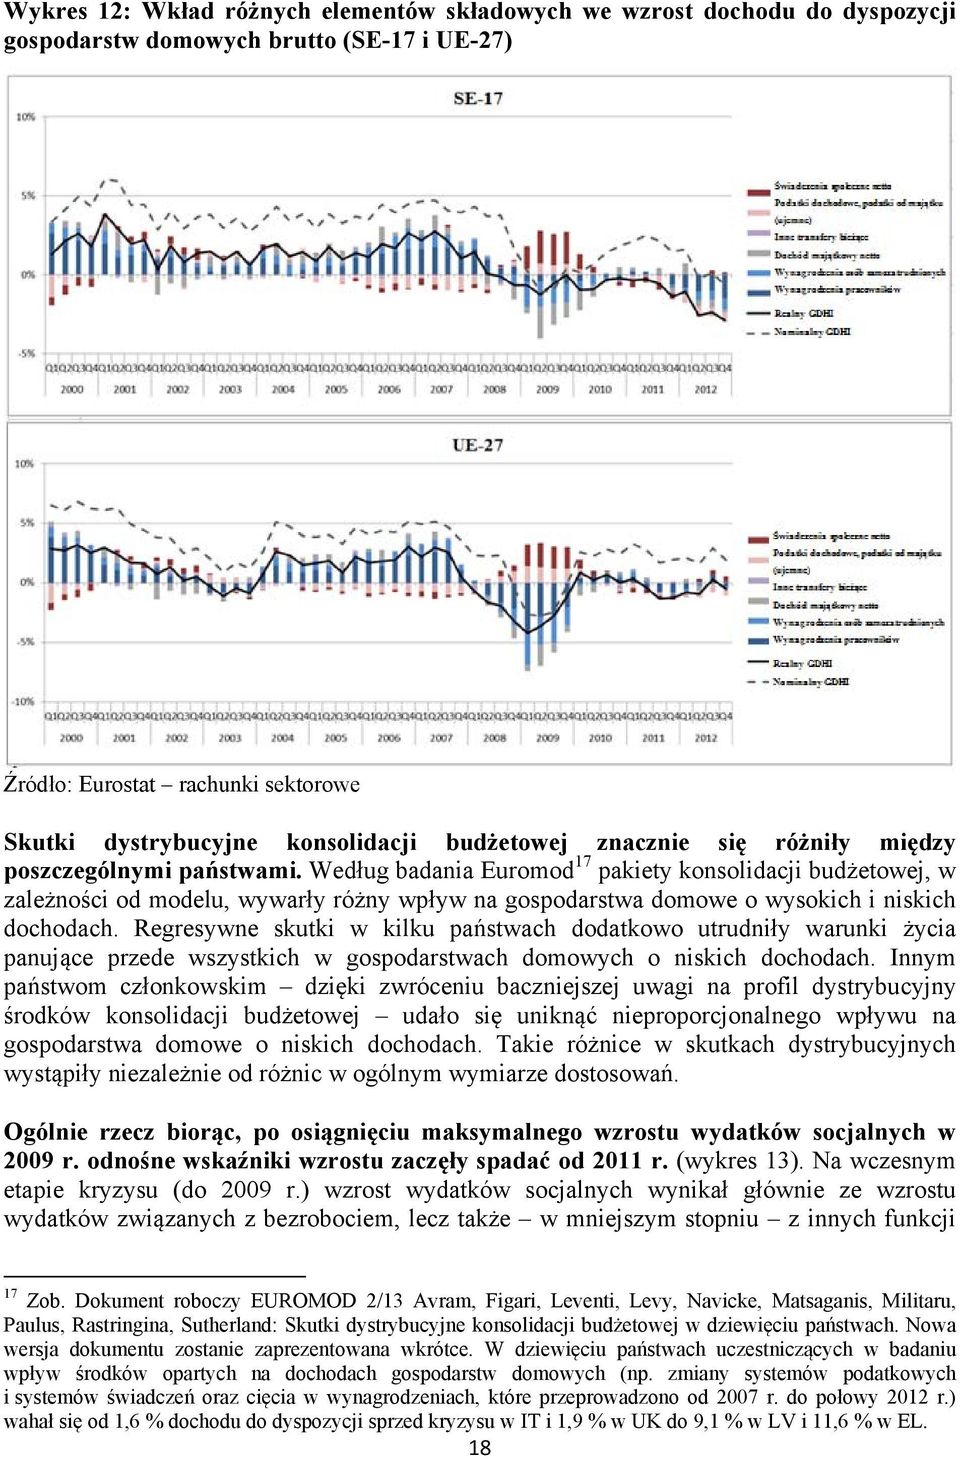 Według badania Euromod 17 pakiety konsolidacji budżetowej, w zależności od modelu, wywarły różny wpływ na gospodarstwa domowe o wysokich i niskich dochodach.